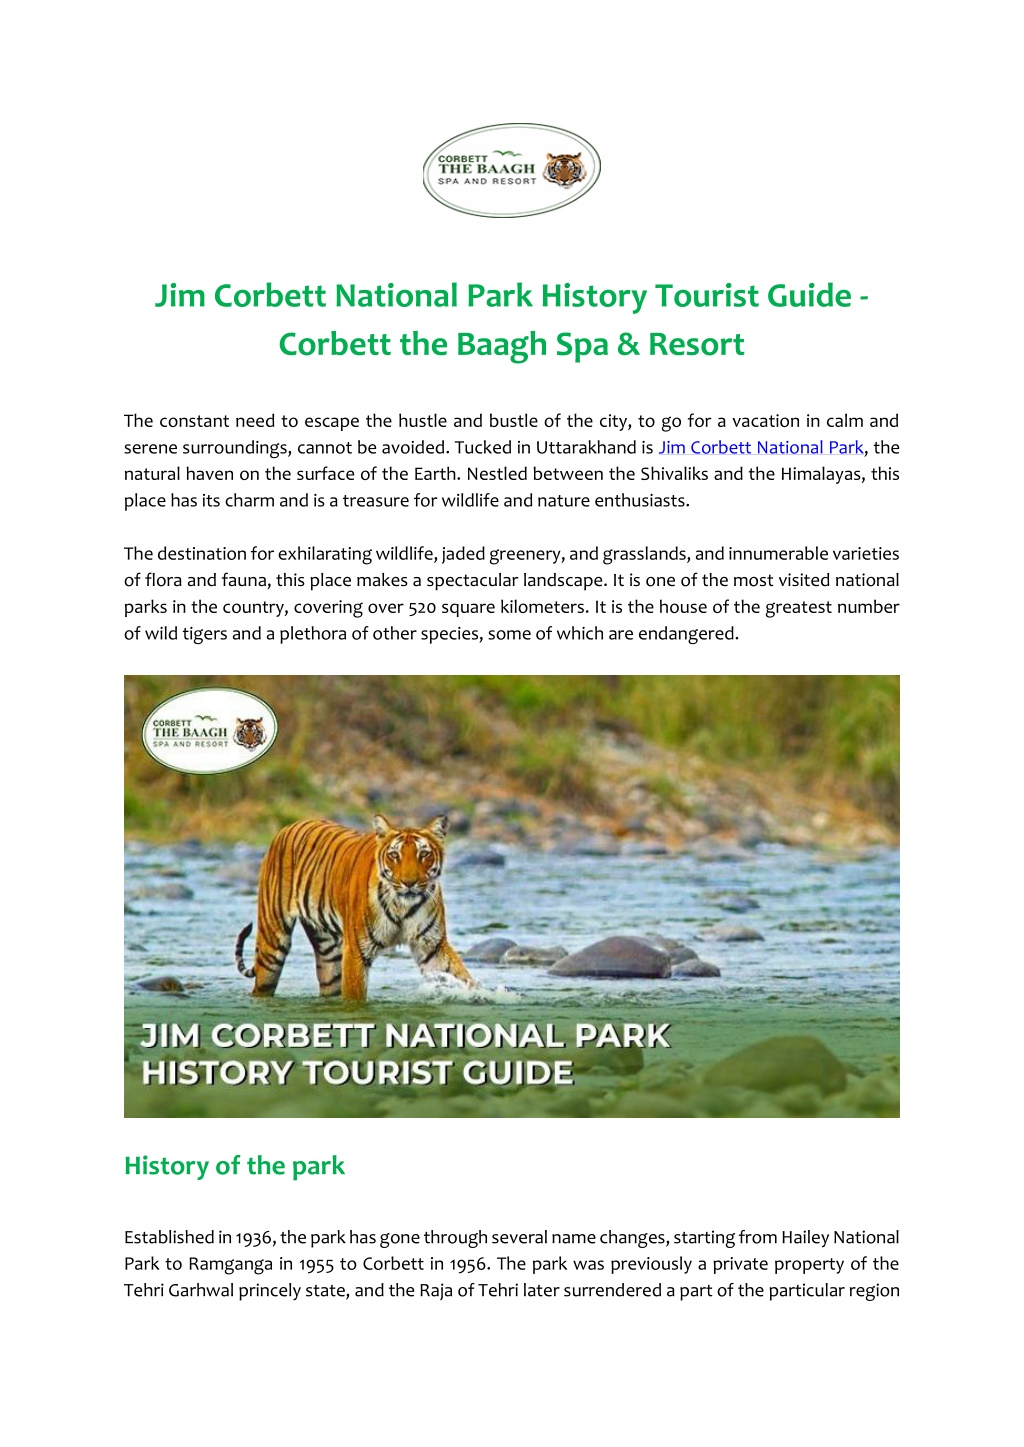 Nationals Park Information Guide